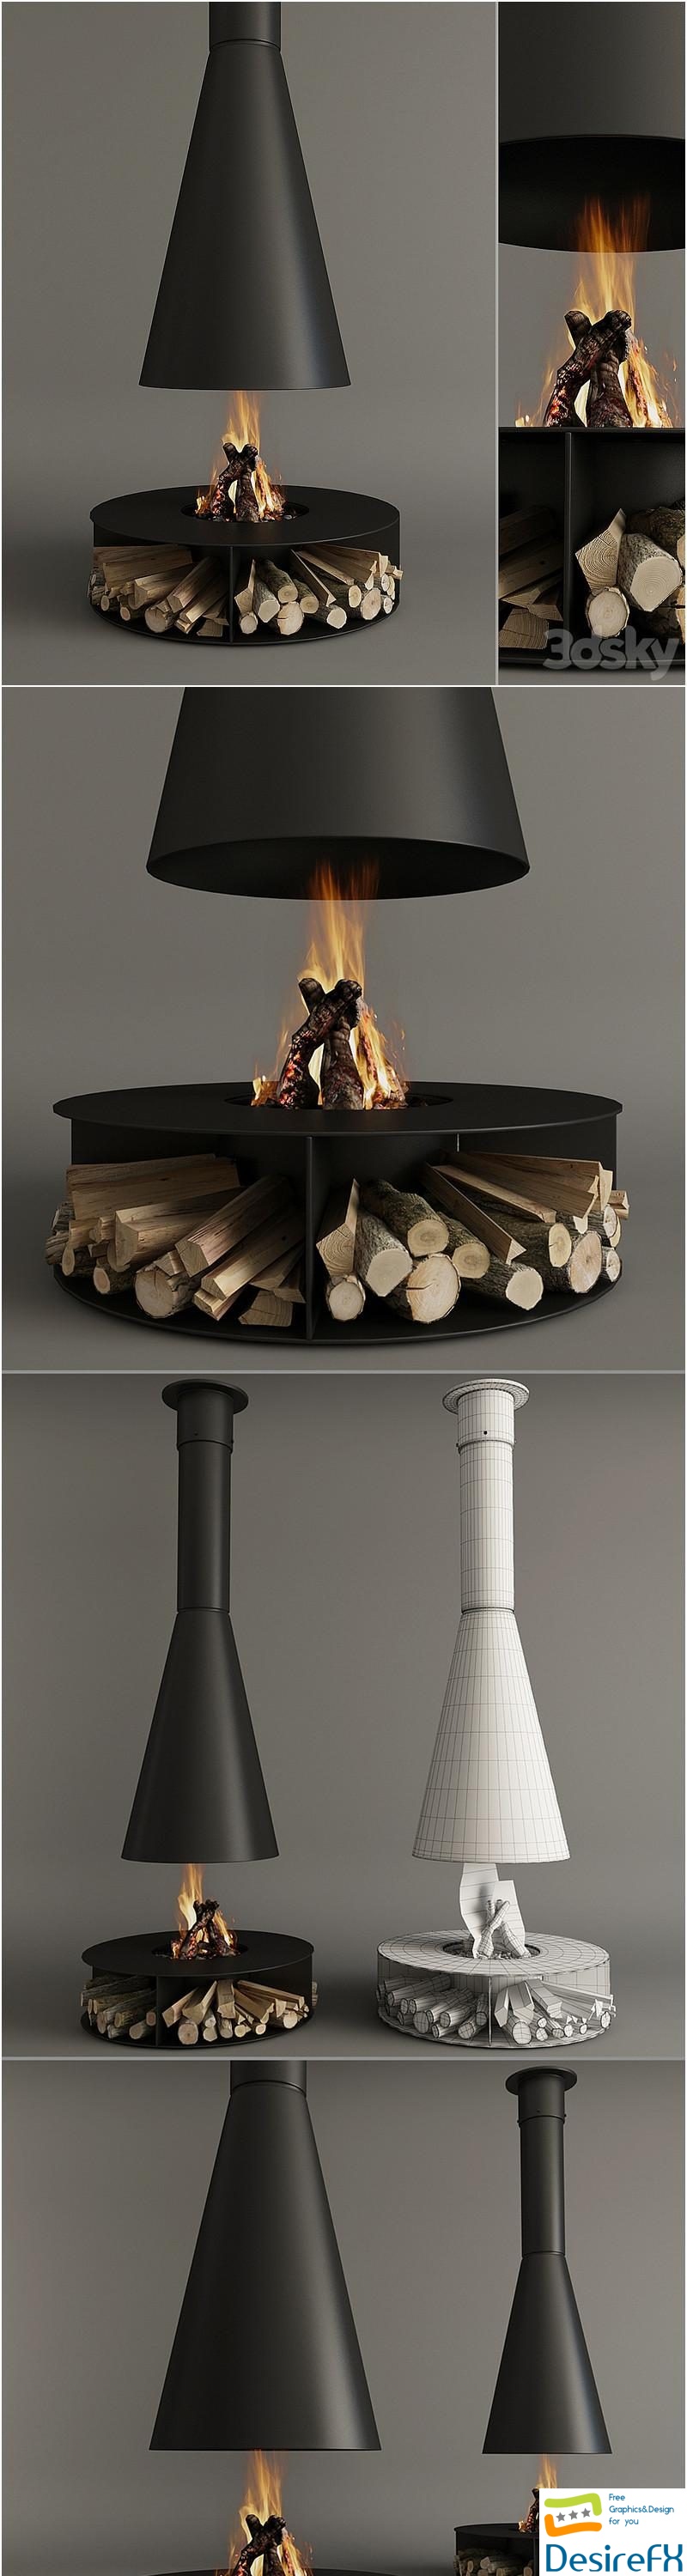 Fireplace_Modern_10 3D Model